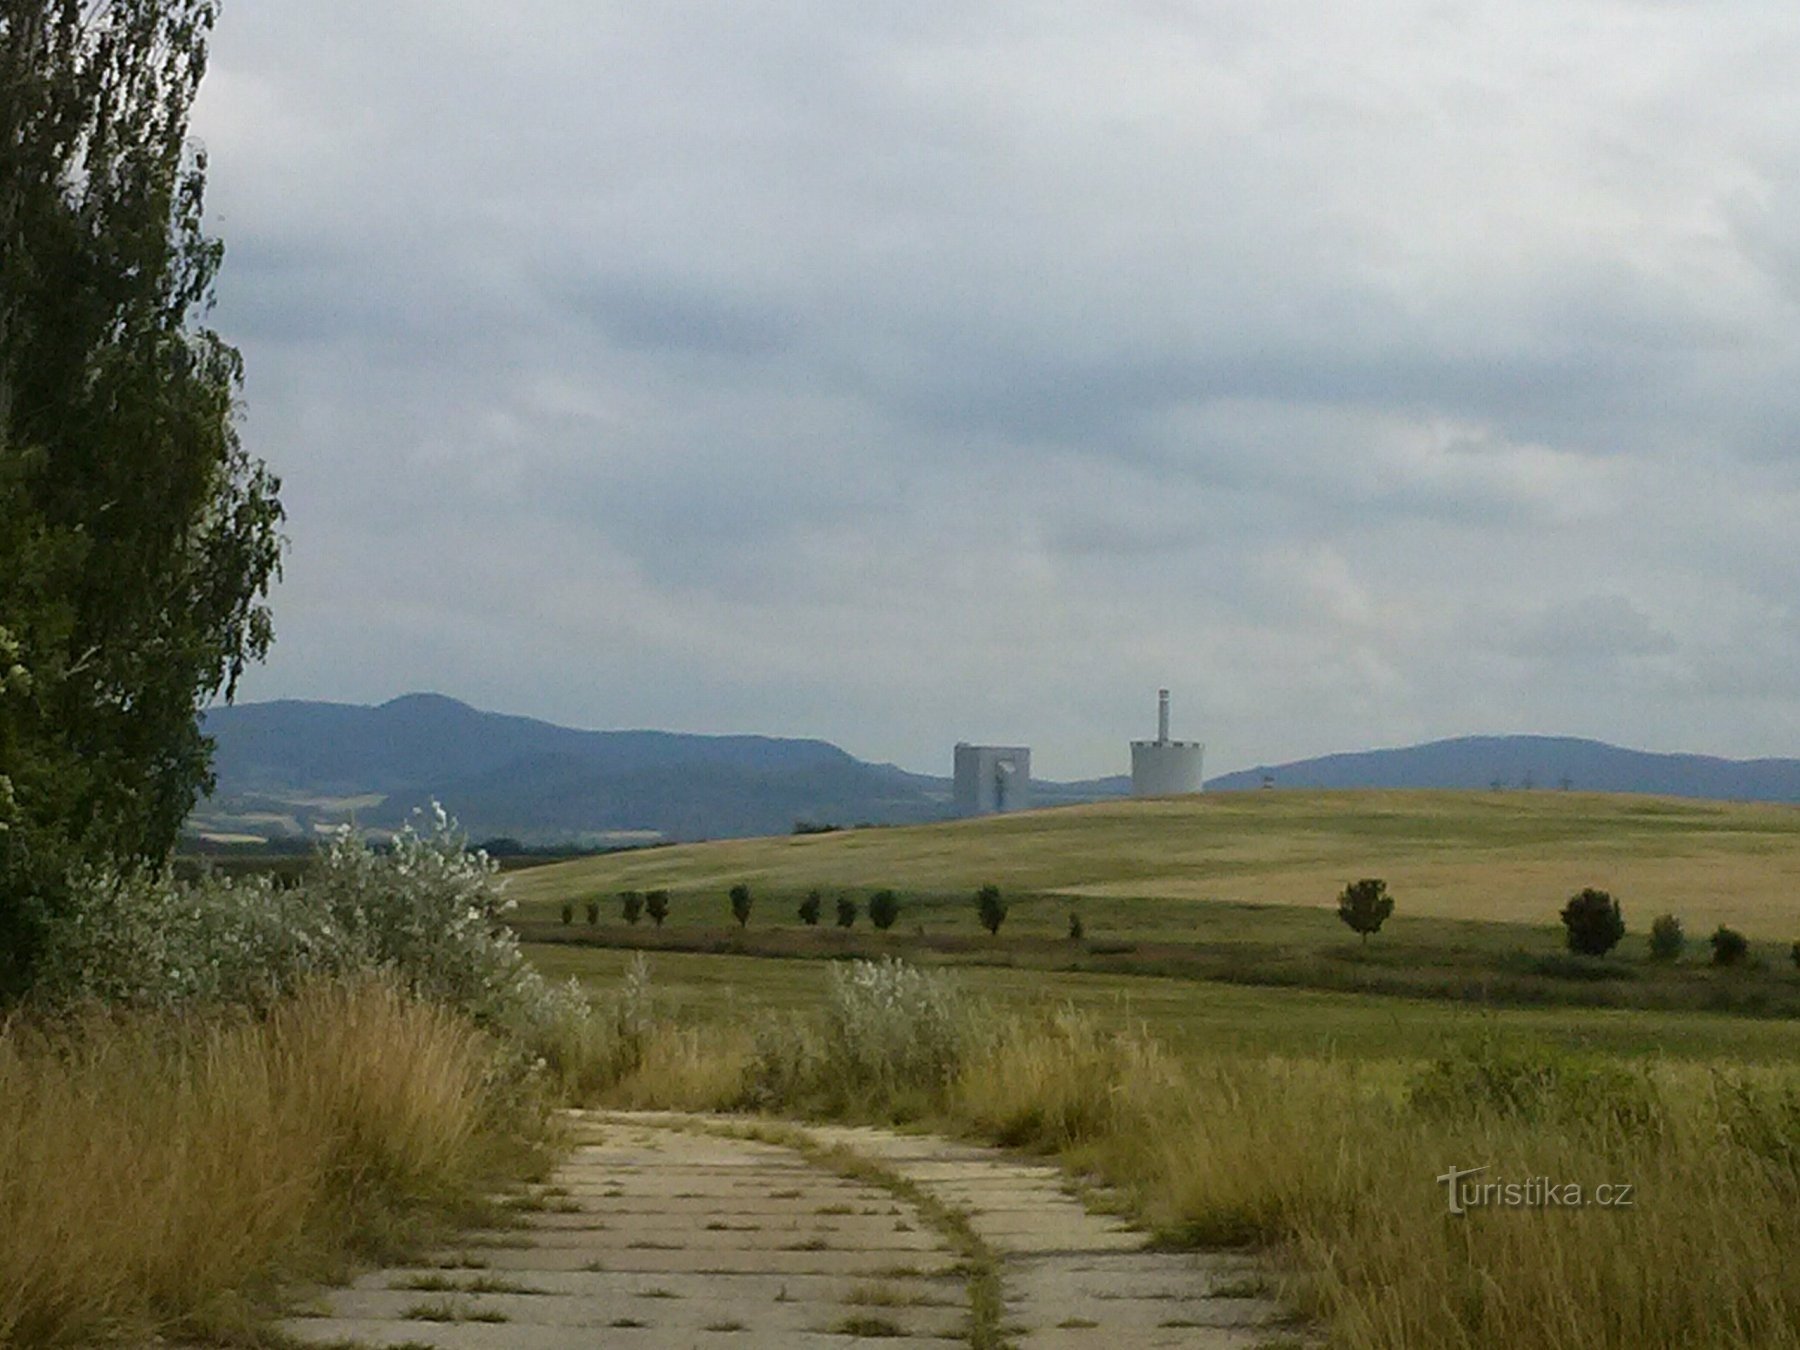 Une vue sur le paysage, les tours de la centrale électrique de Chotějovice se profilent